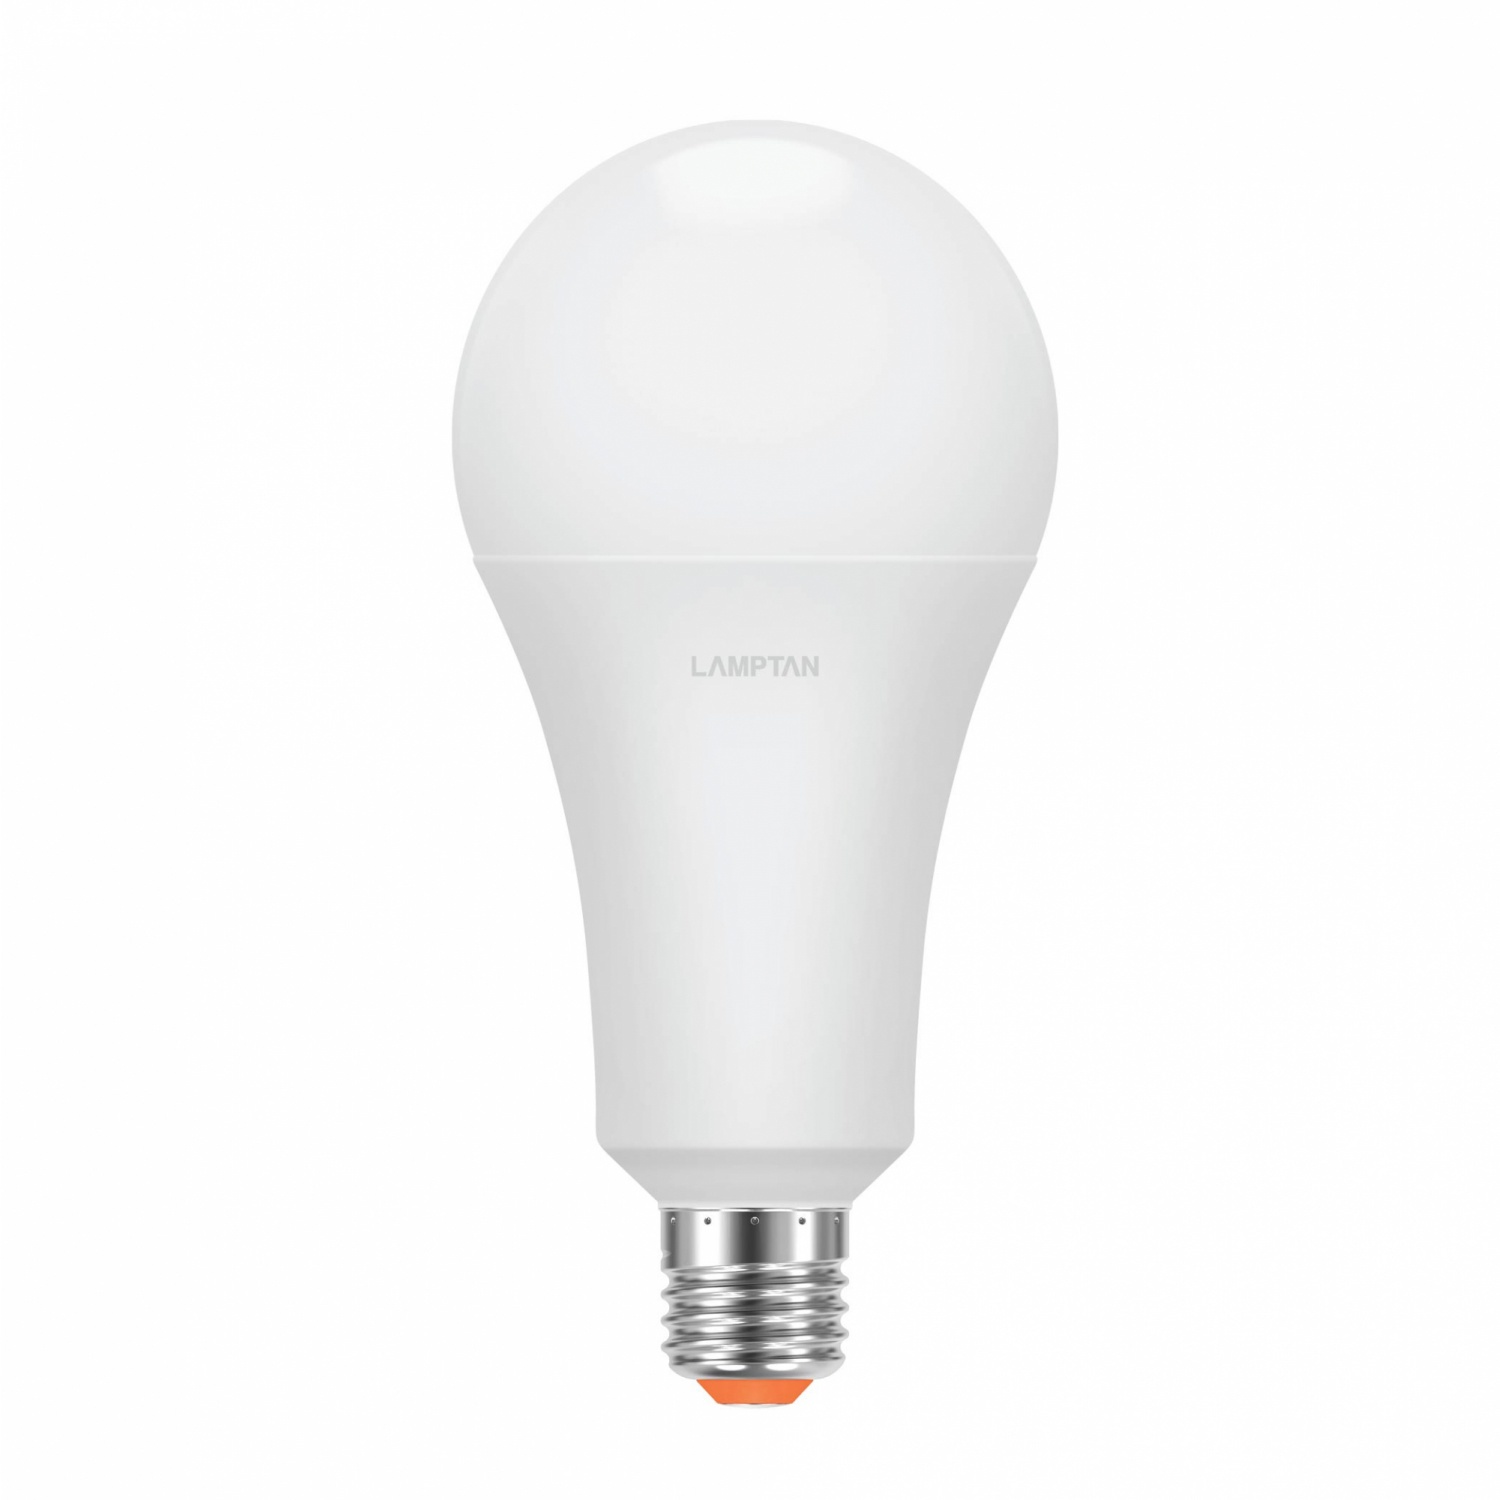 LAMPTAN หลอดไฟ LED BULB 18W แสงวอร์มไวท์ รุ่น GLOSS V2 E27